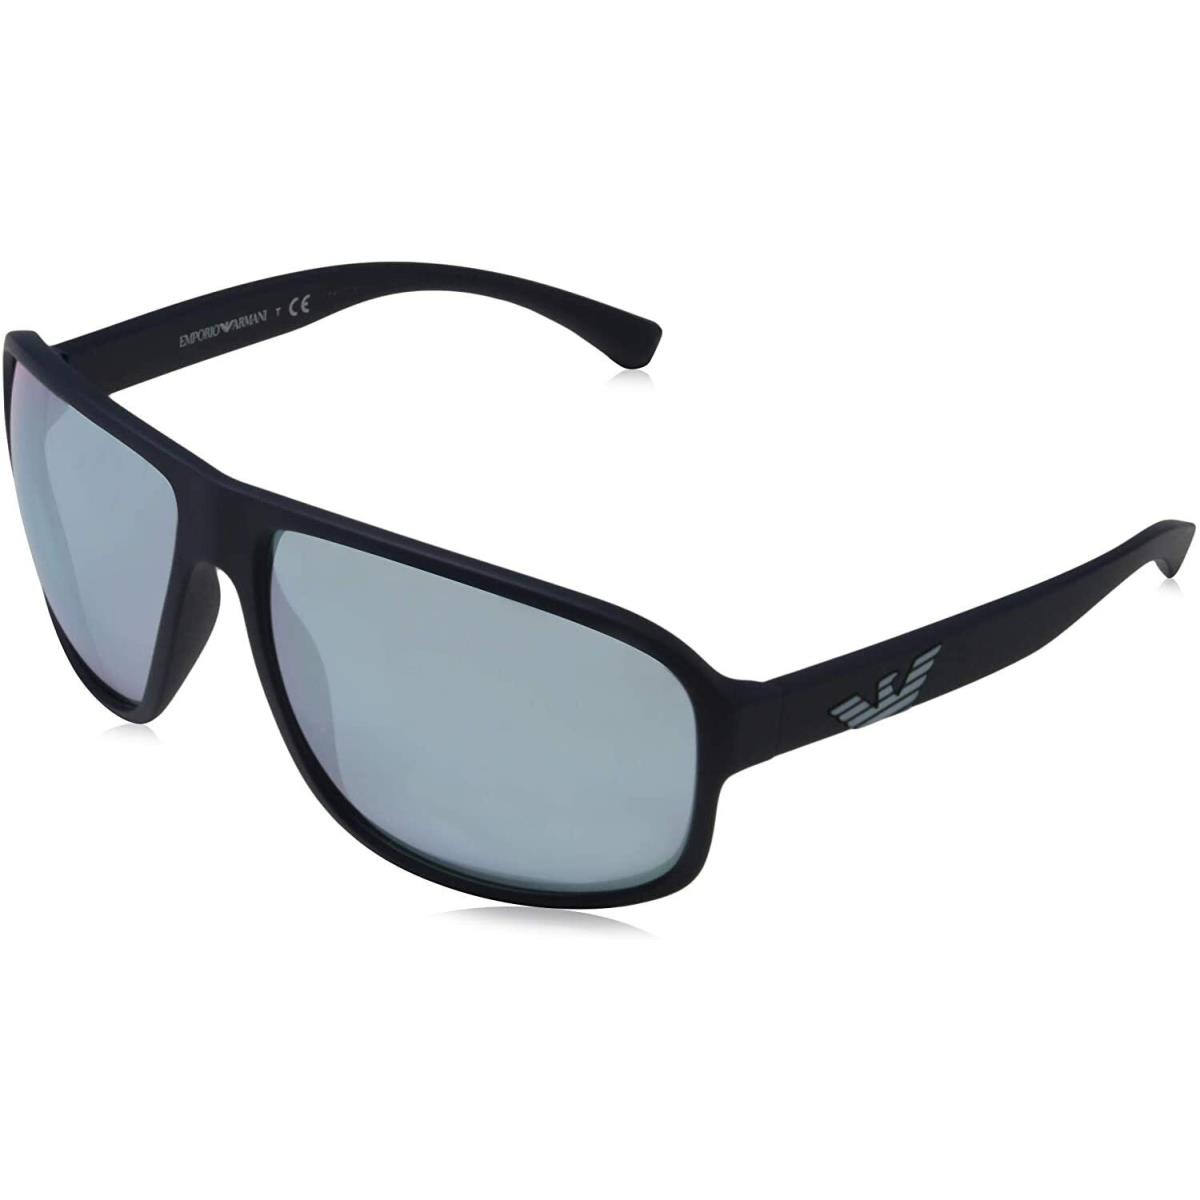 Emporio Armani Sunglasses EA4130 5754/6J 63-14-125 Fashion Designer Eyewear